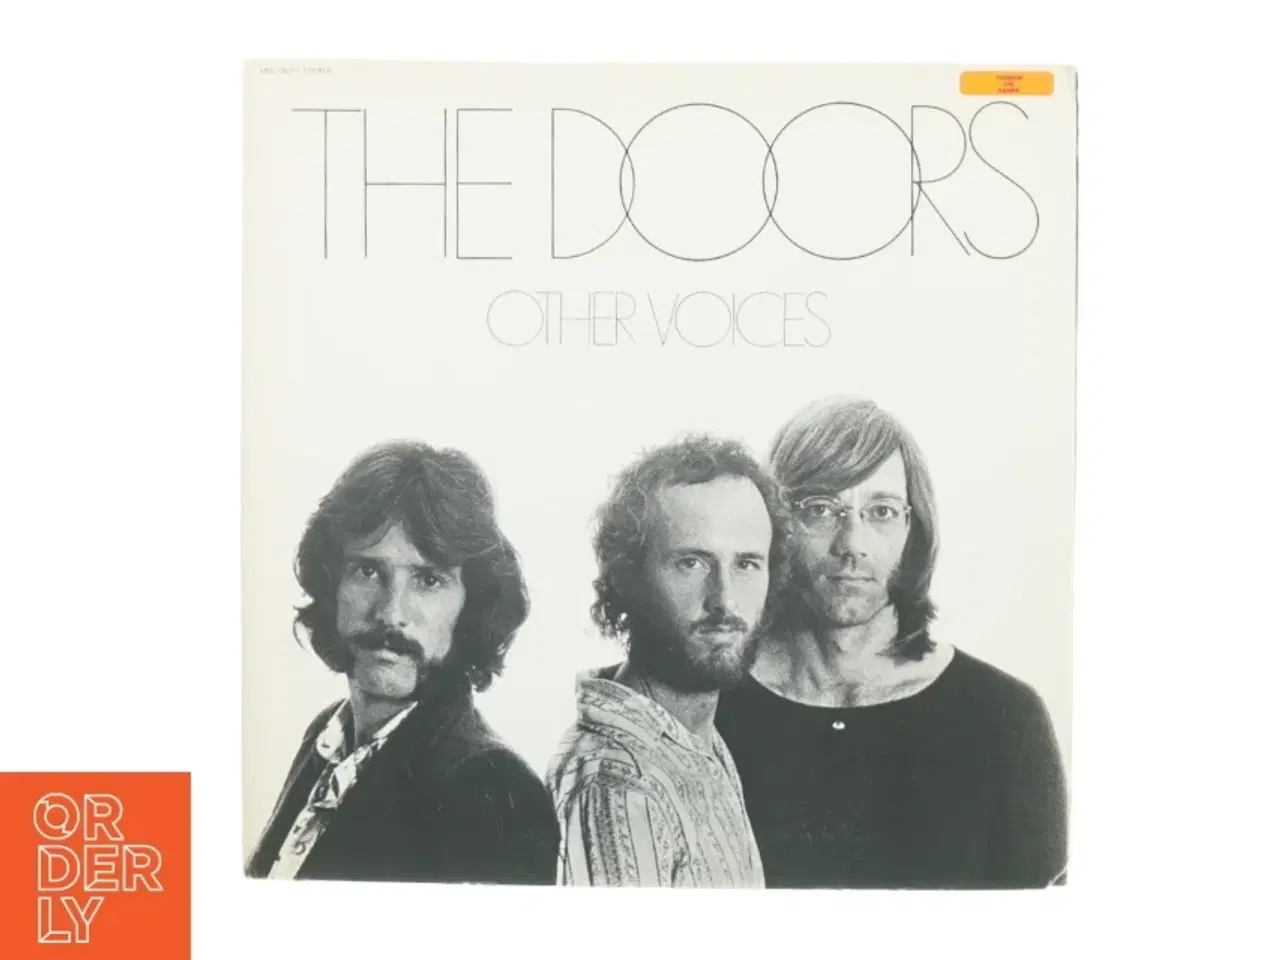 Billede 1 - The Doors - Other voices (LP) fra Elektra (str. 30 cm)